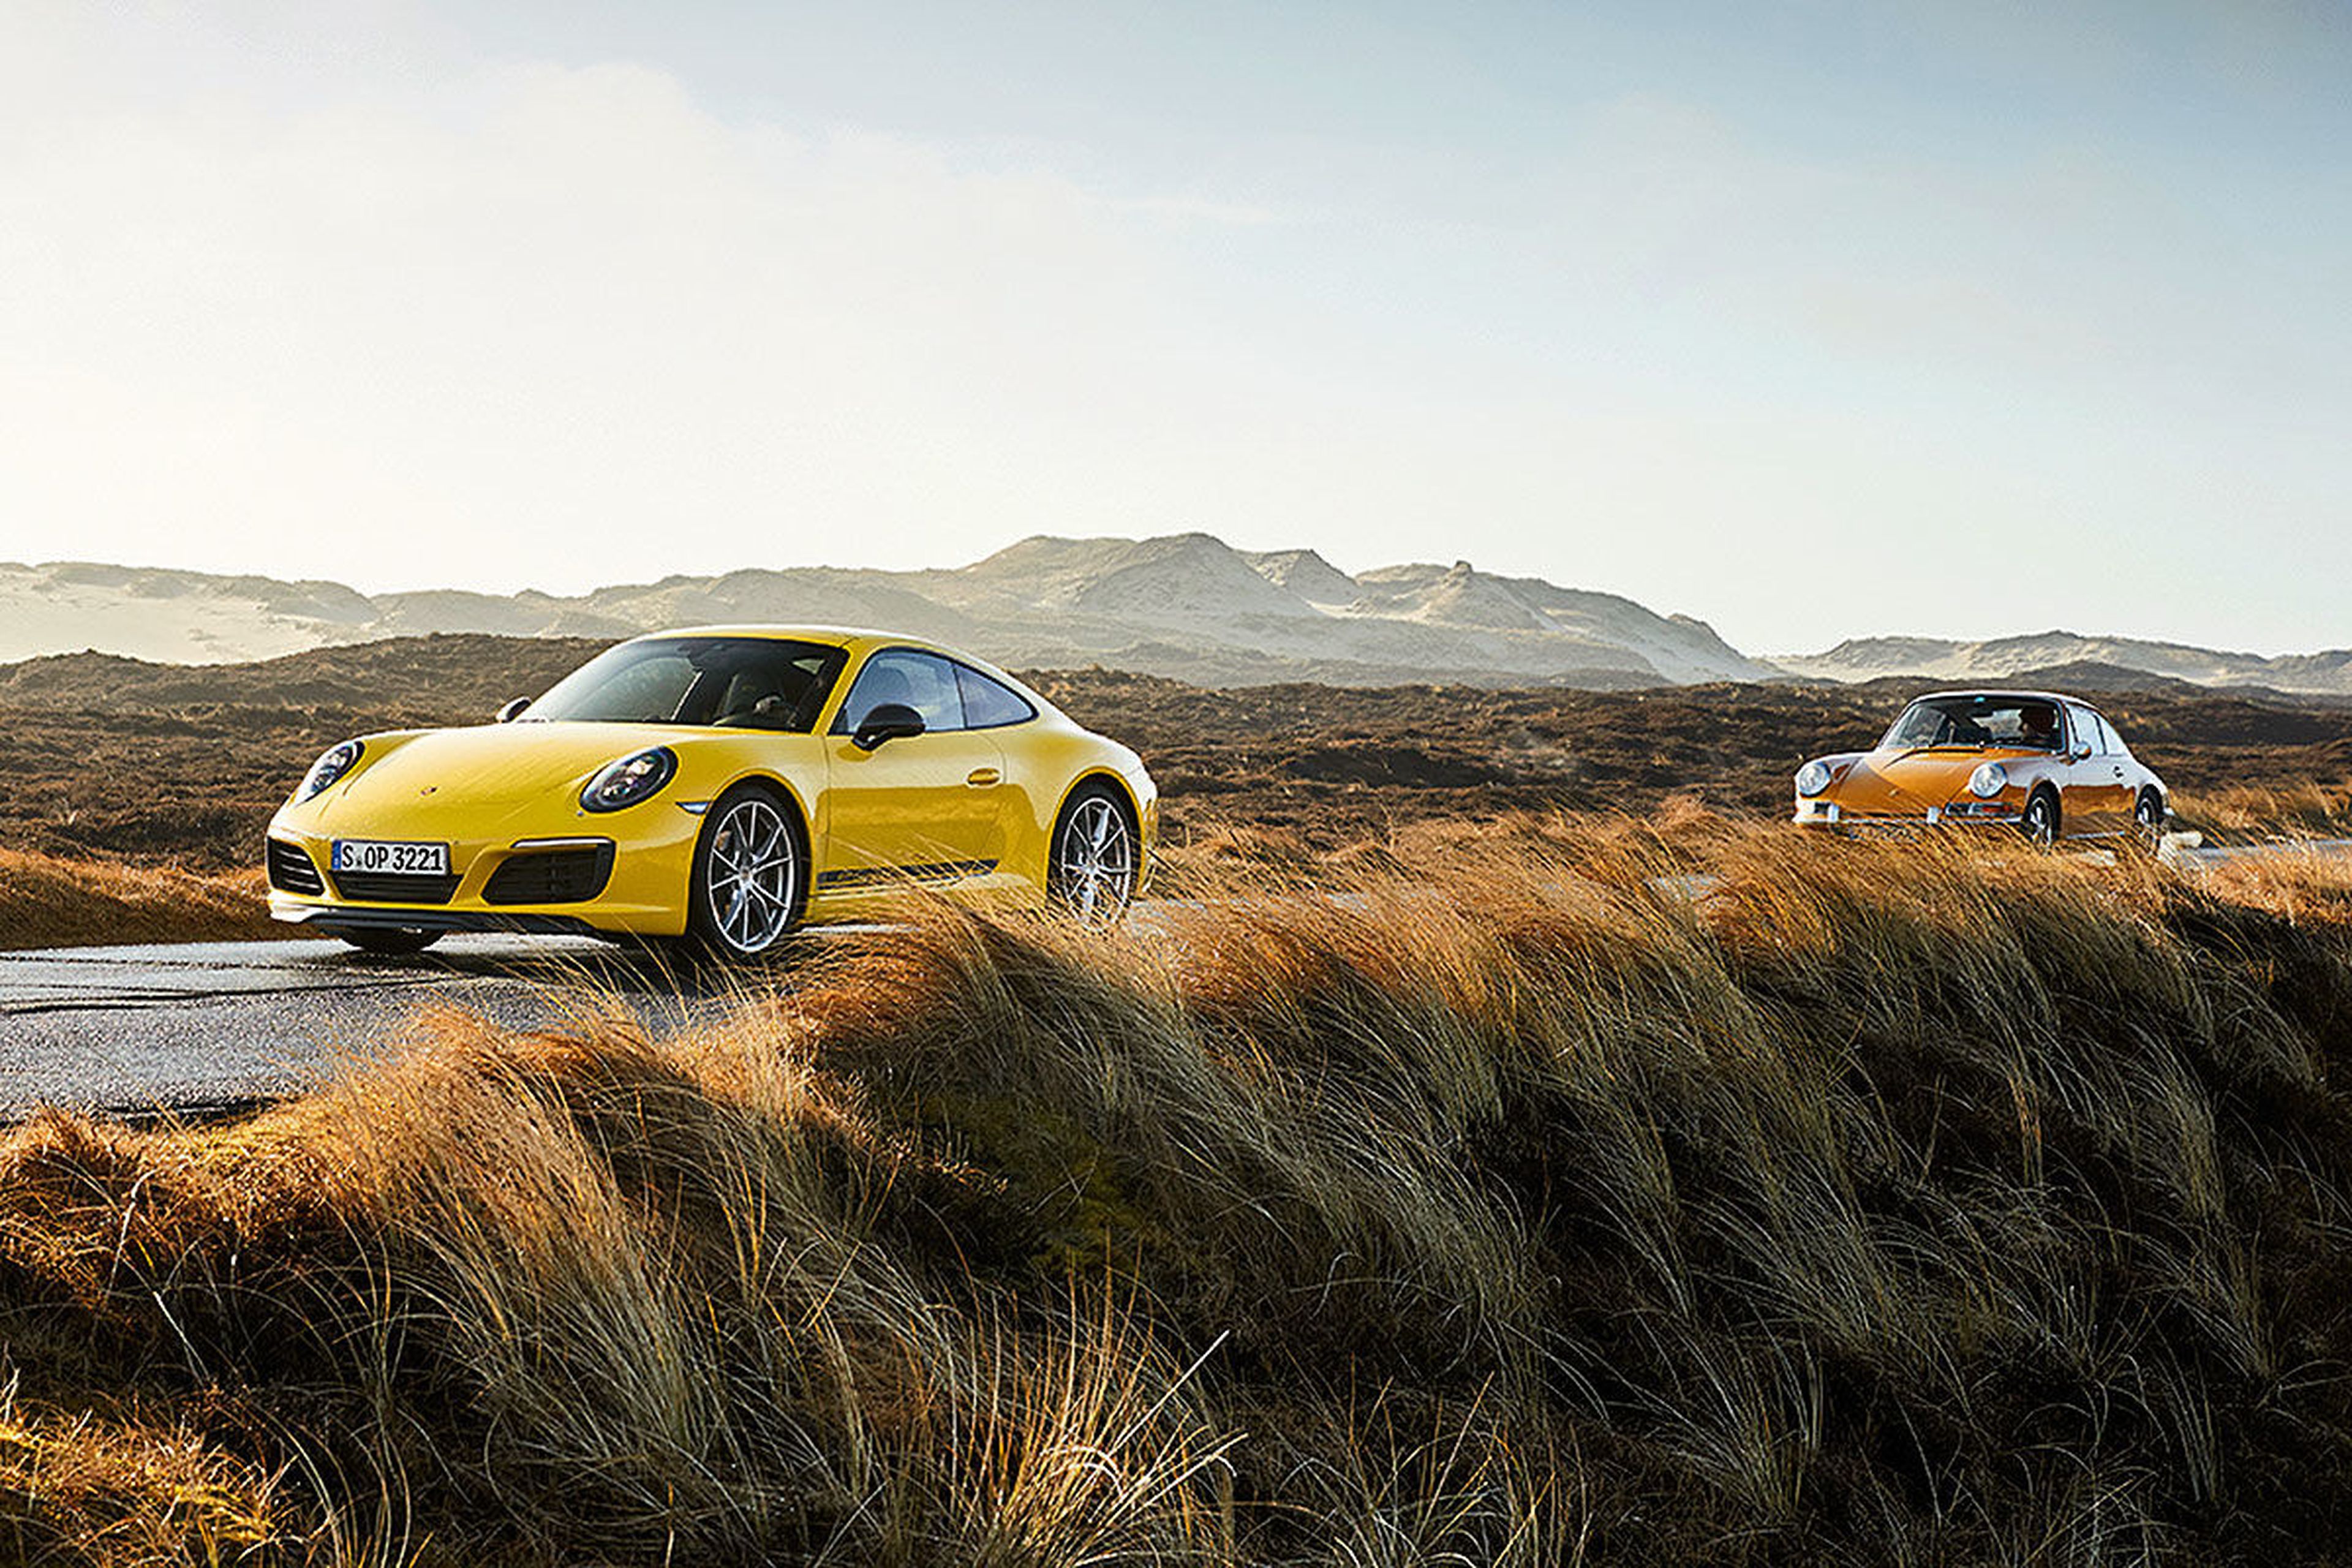 Porsche 911 Carrera T vs su antepasado